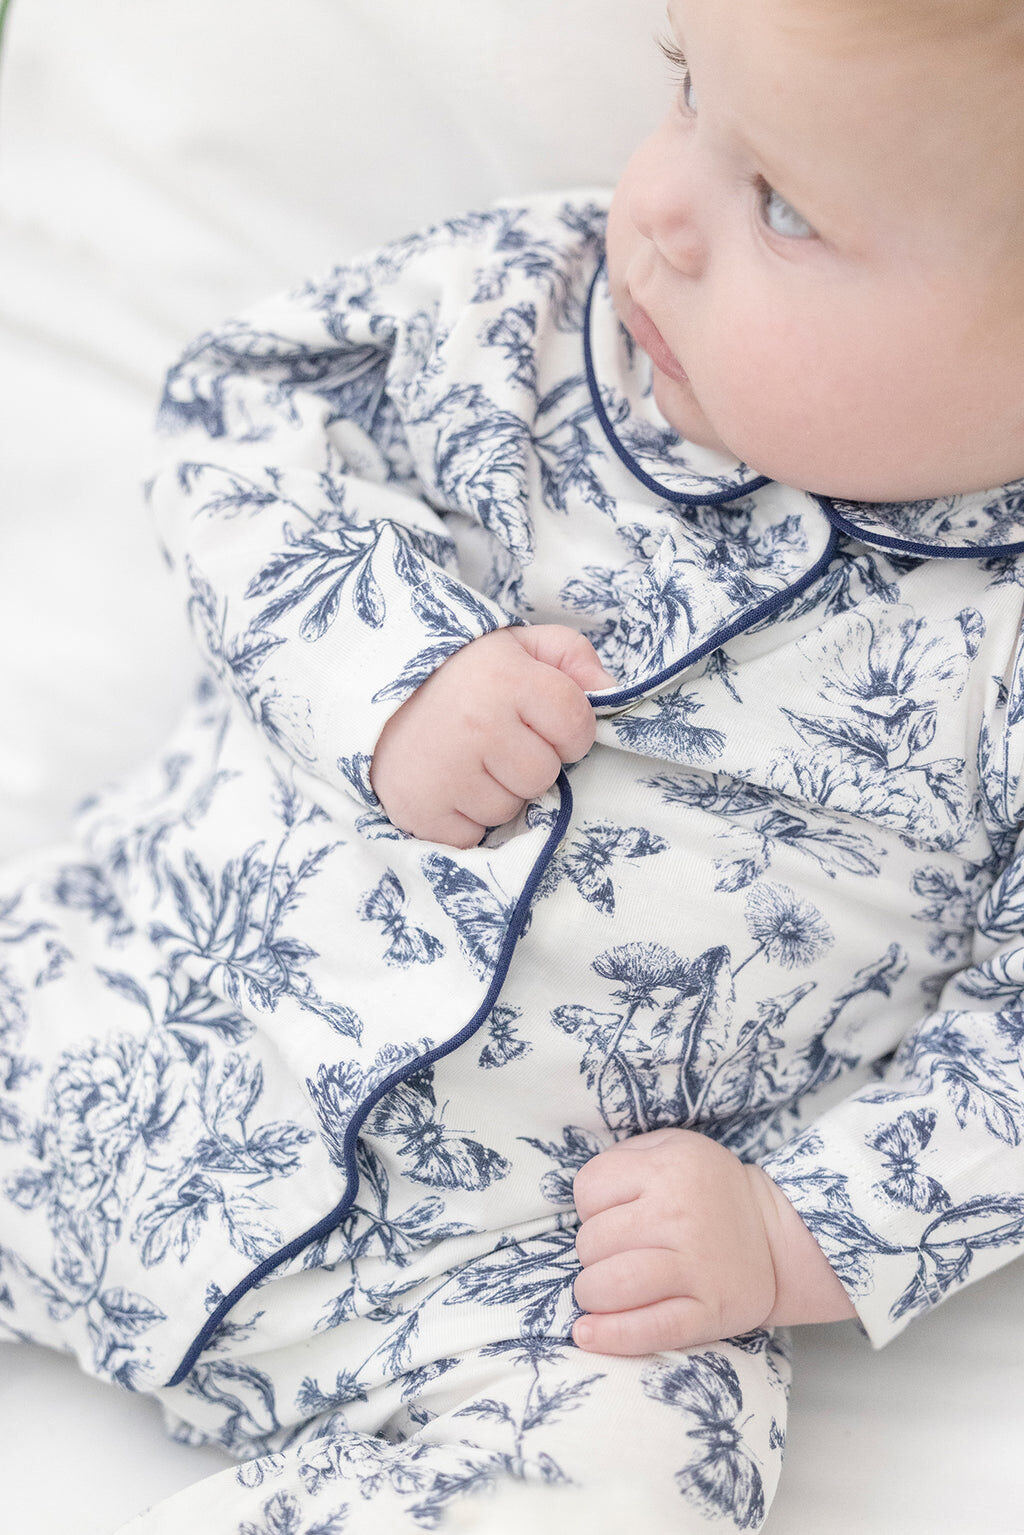 BABY GIRLY - 🎀Ensemble pyjama bébé fille 0/3 mois🎀 🎀Biberon et  attache-tétine 🎀 🎀 Délai confection 3-4 semaines 🎀